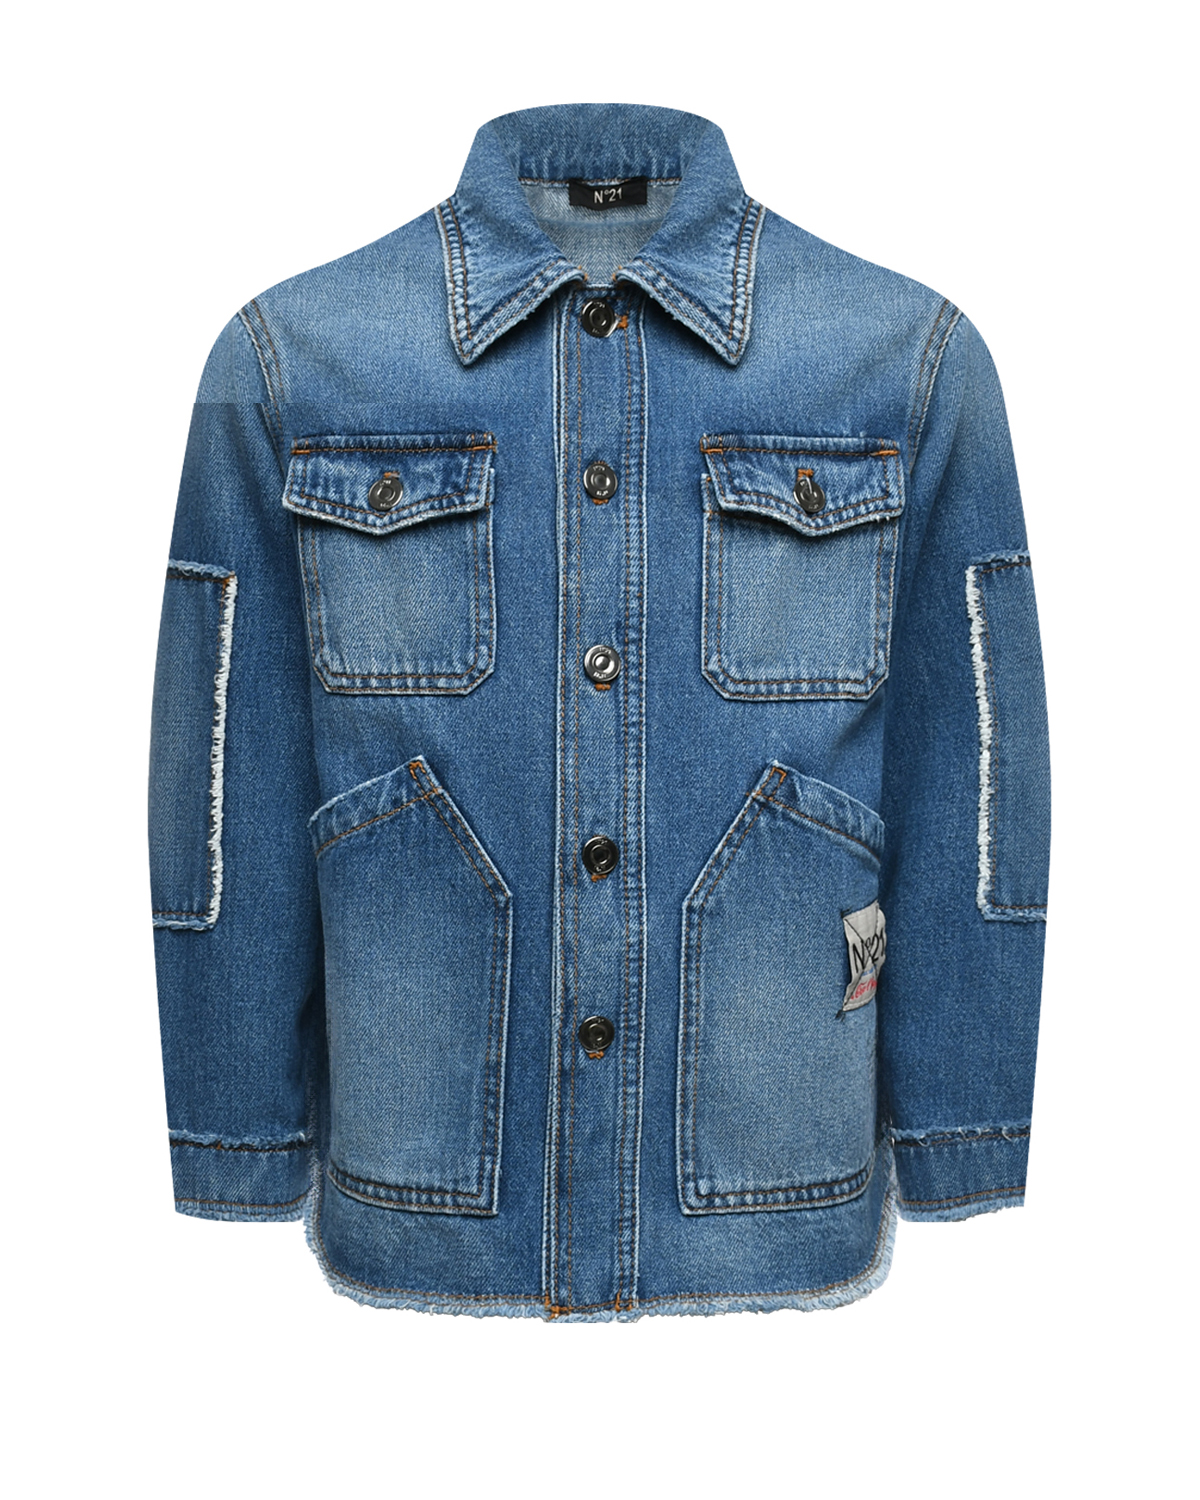 Выбеленная джинсовая куртка, синяя No. 21, размер 152, цвет синий - фото 1